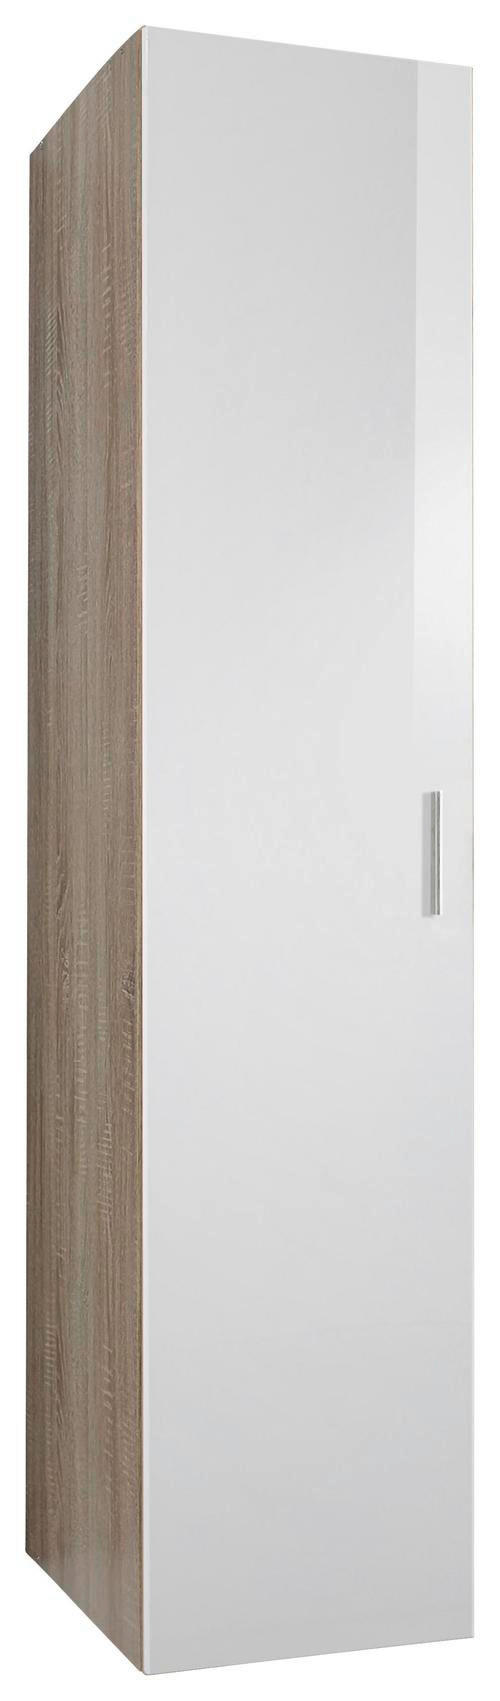 Xora PREDSIEŇOVÁ SKRIŇA, biela, farby duba, 40/185/54 cm